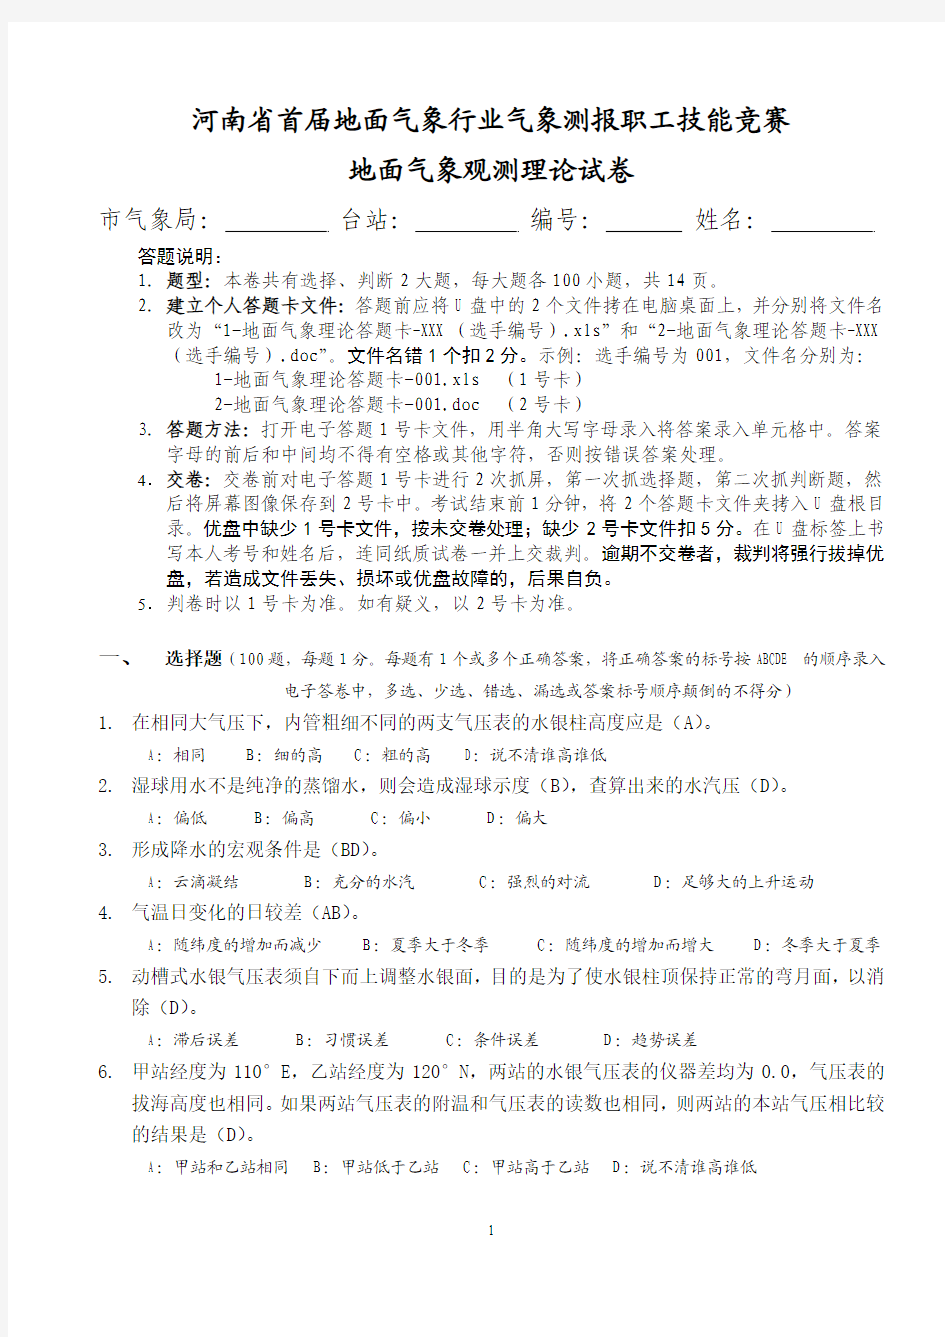 河南省首届气象行业测报技能竞赛试题-理论试卷及答案(2008-11-22)